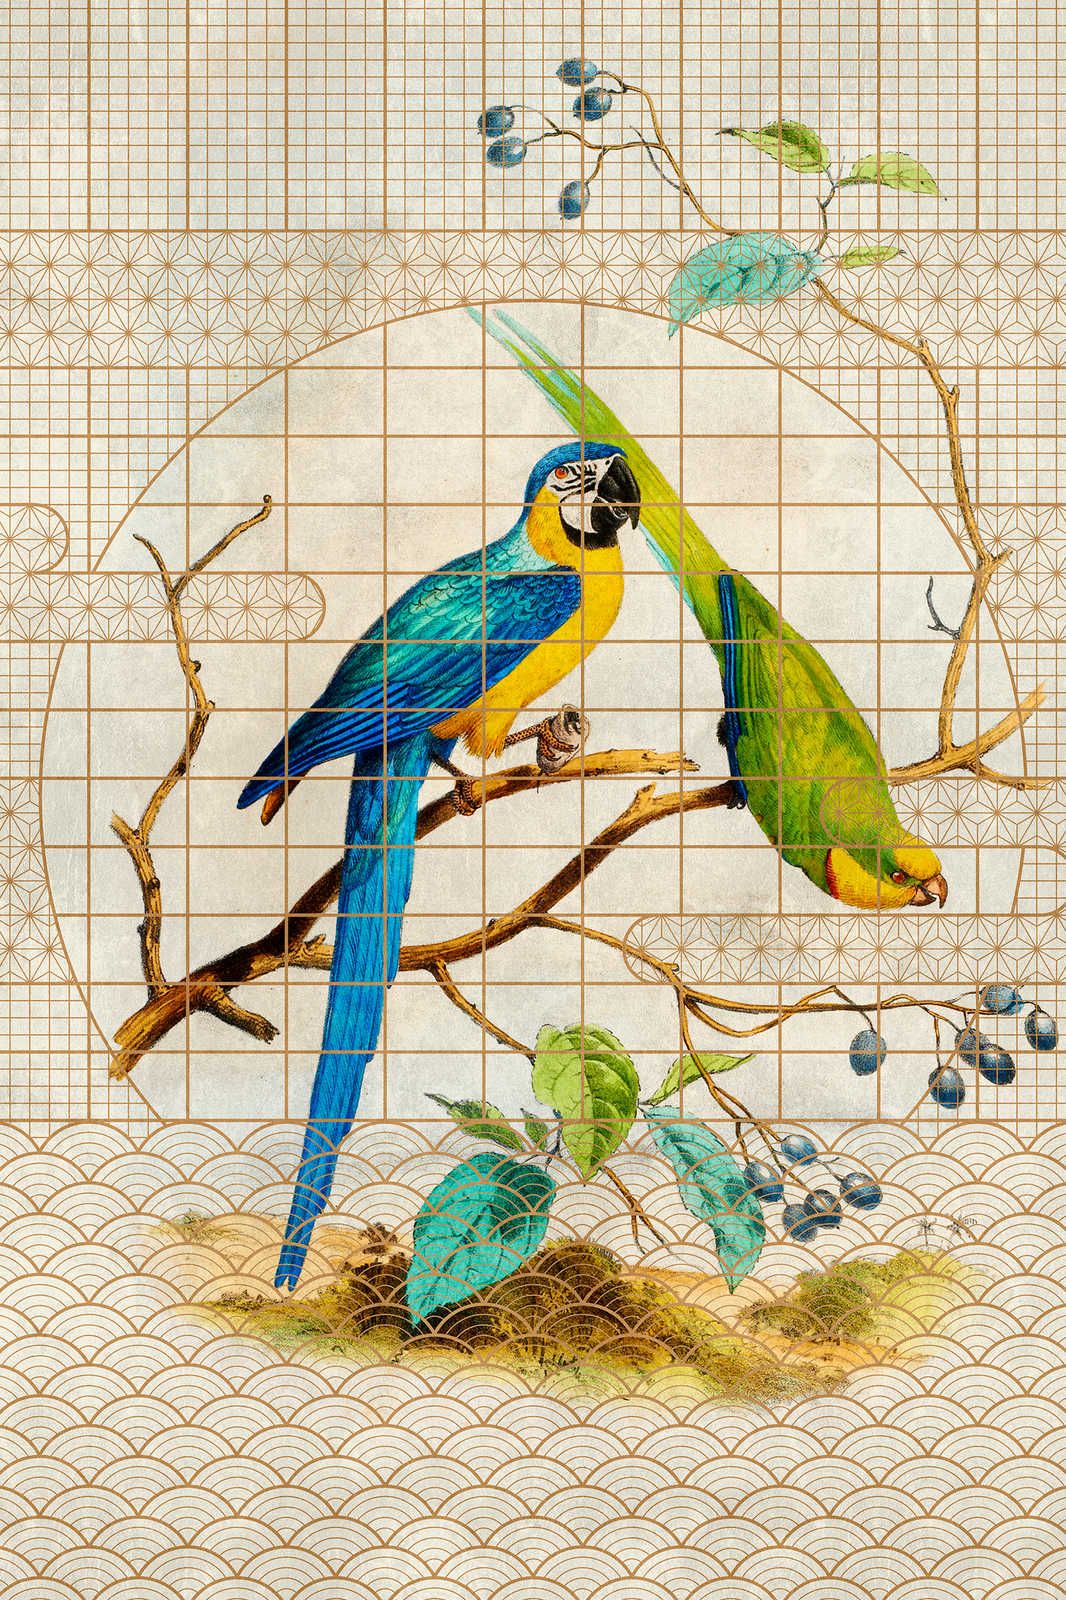             Voliera 3 - Quadro su tela con pappagalli e motivi dorati in stile vintage - 0,90 m x 0,60 m
        